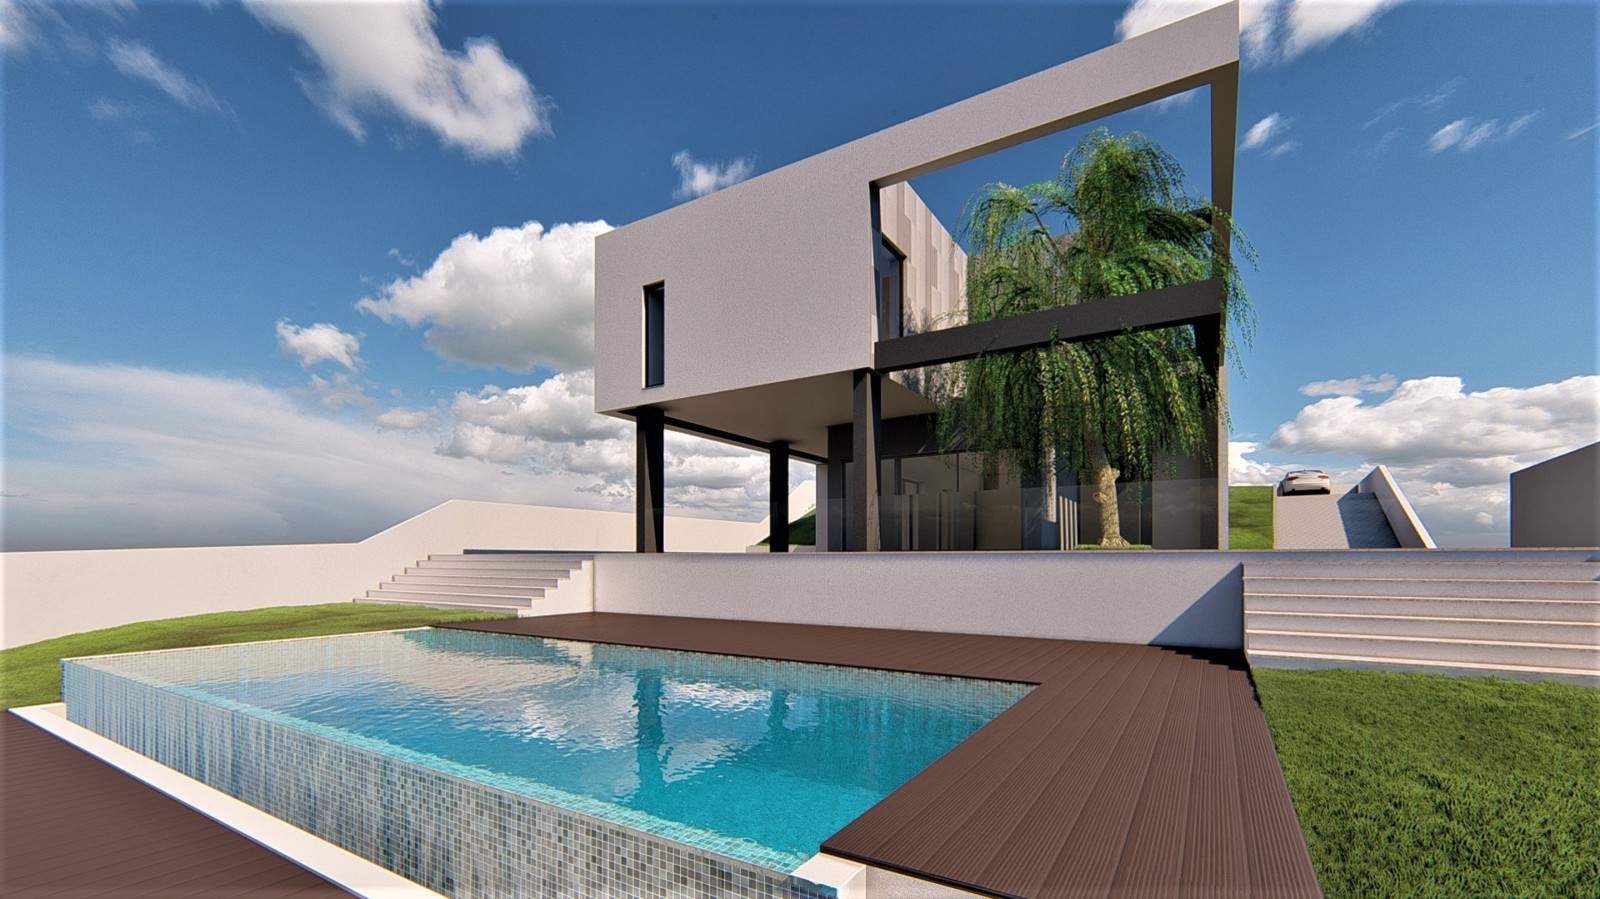 Villa de 3 dormitorios en construcción en venta, en Vilamoura, Algarve_213462